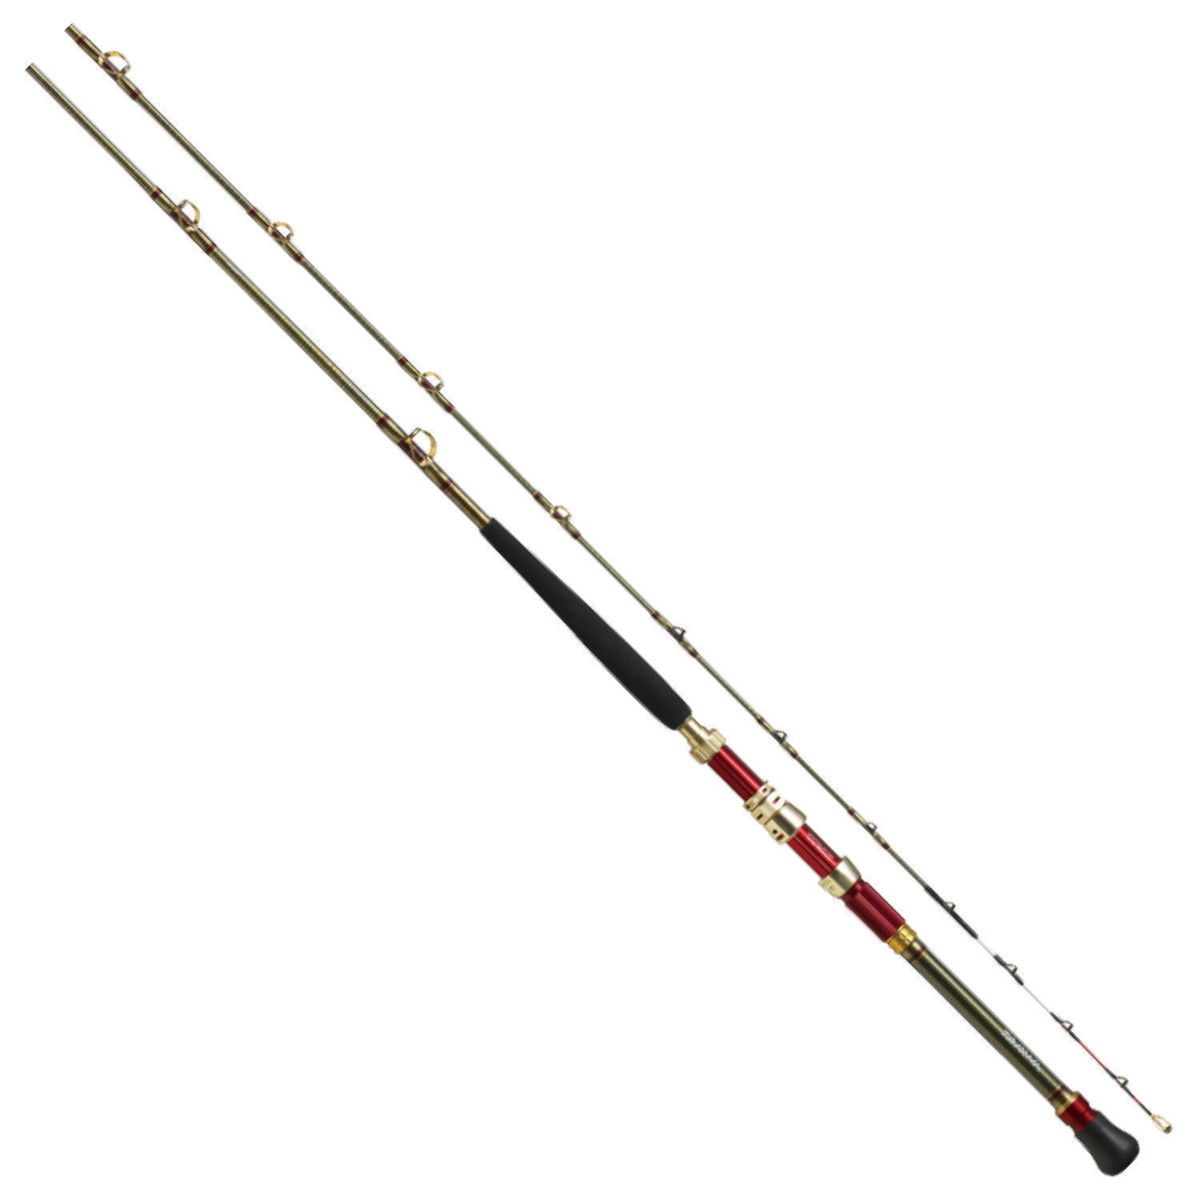 おすすめの落とし込み専用竿を元釣具屋が厳選 流用できる竿も紹介します Tsuri Hack 釣りハック